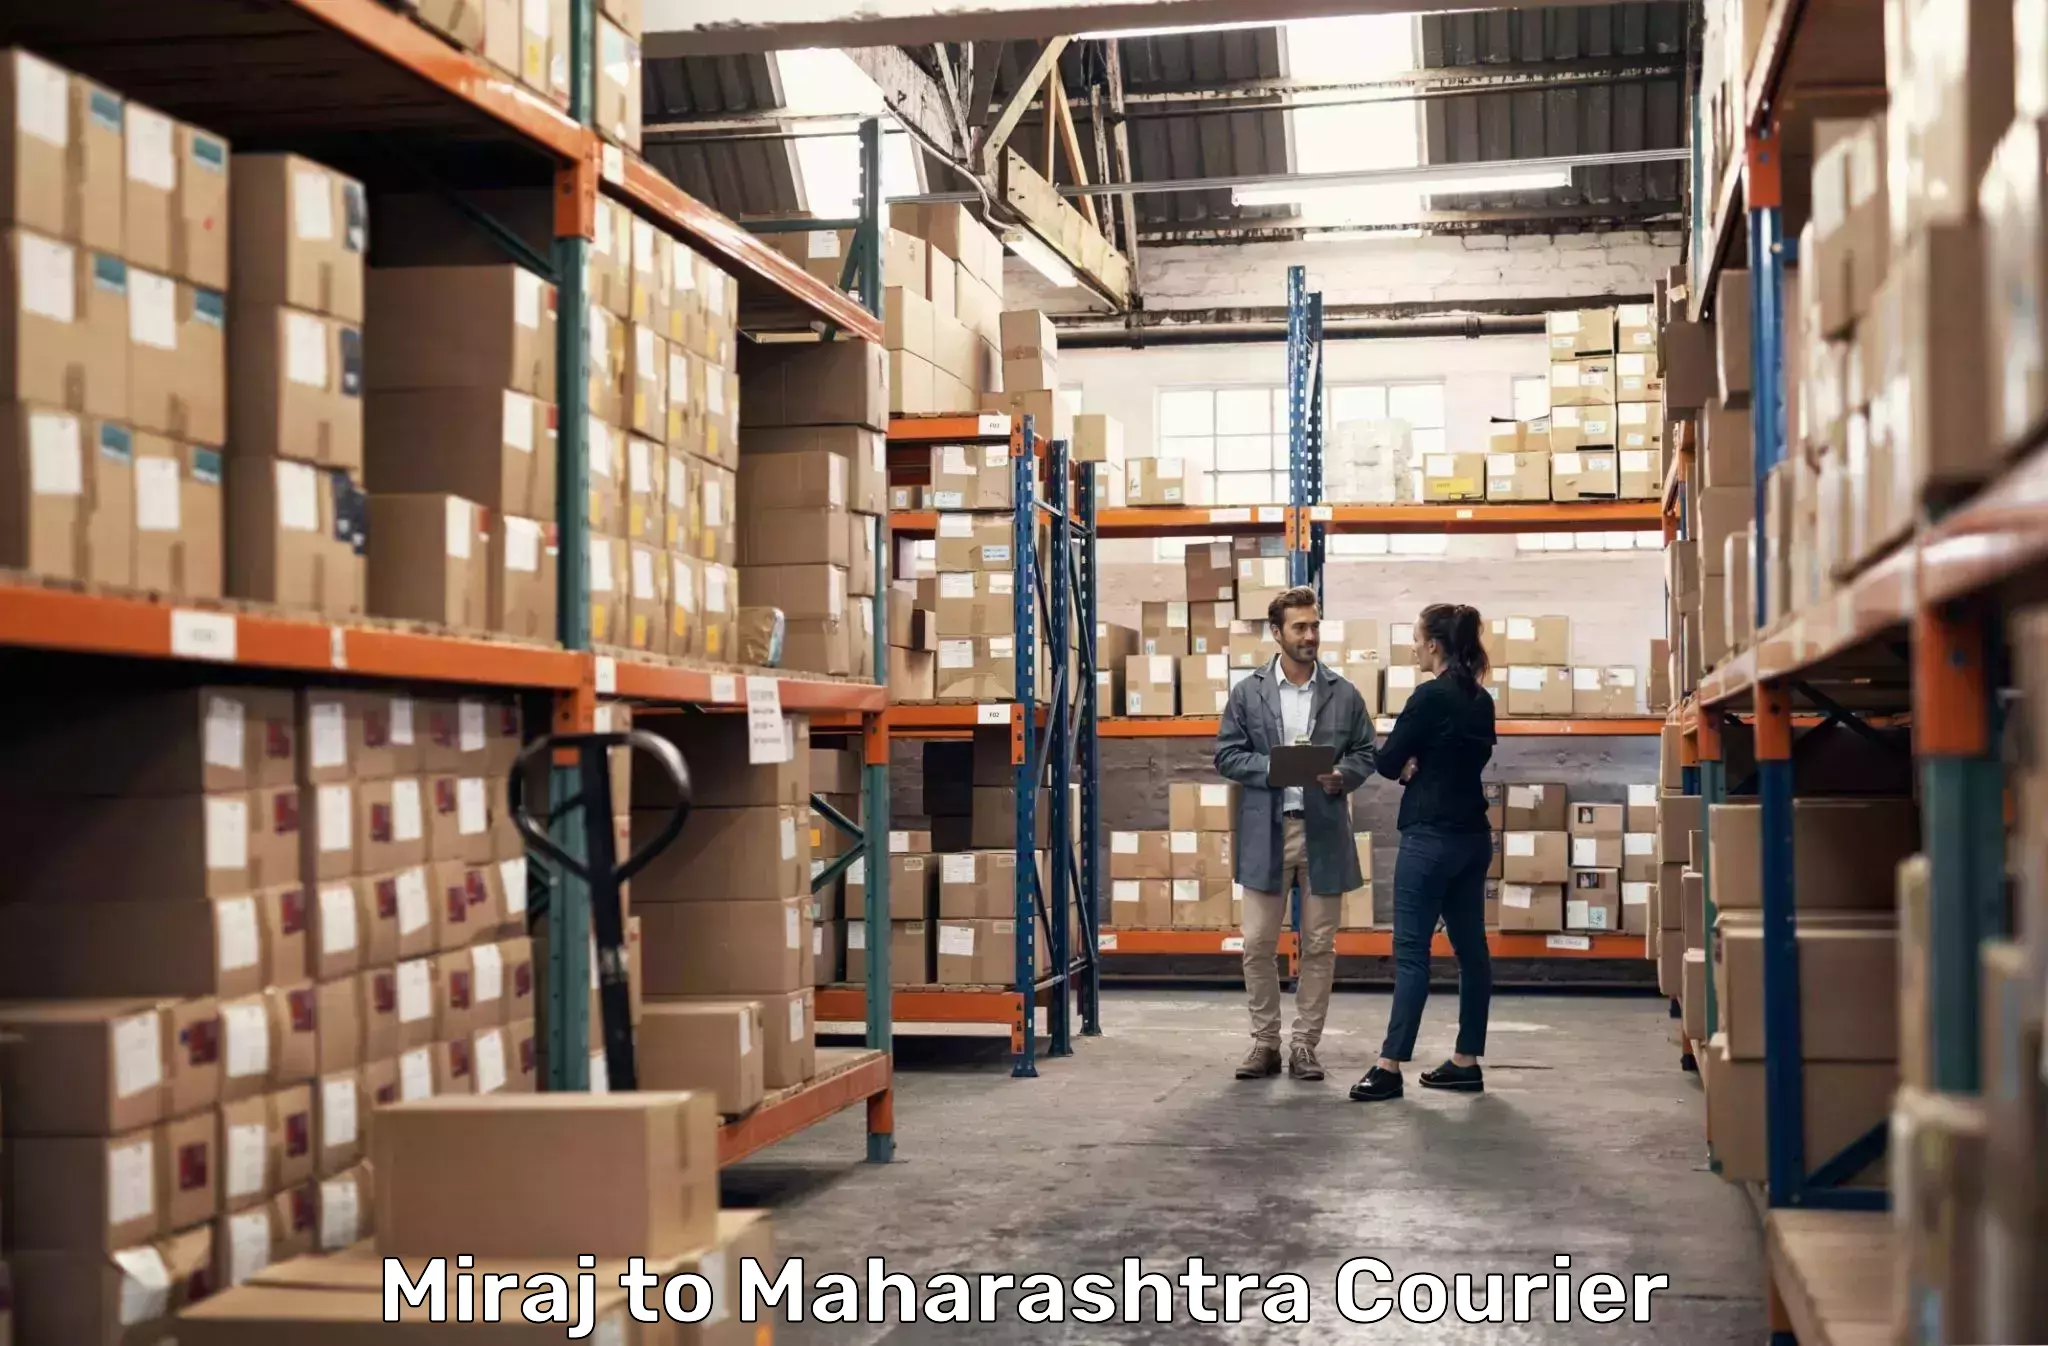 High-capacity parcel service Miraj to Maharashtra